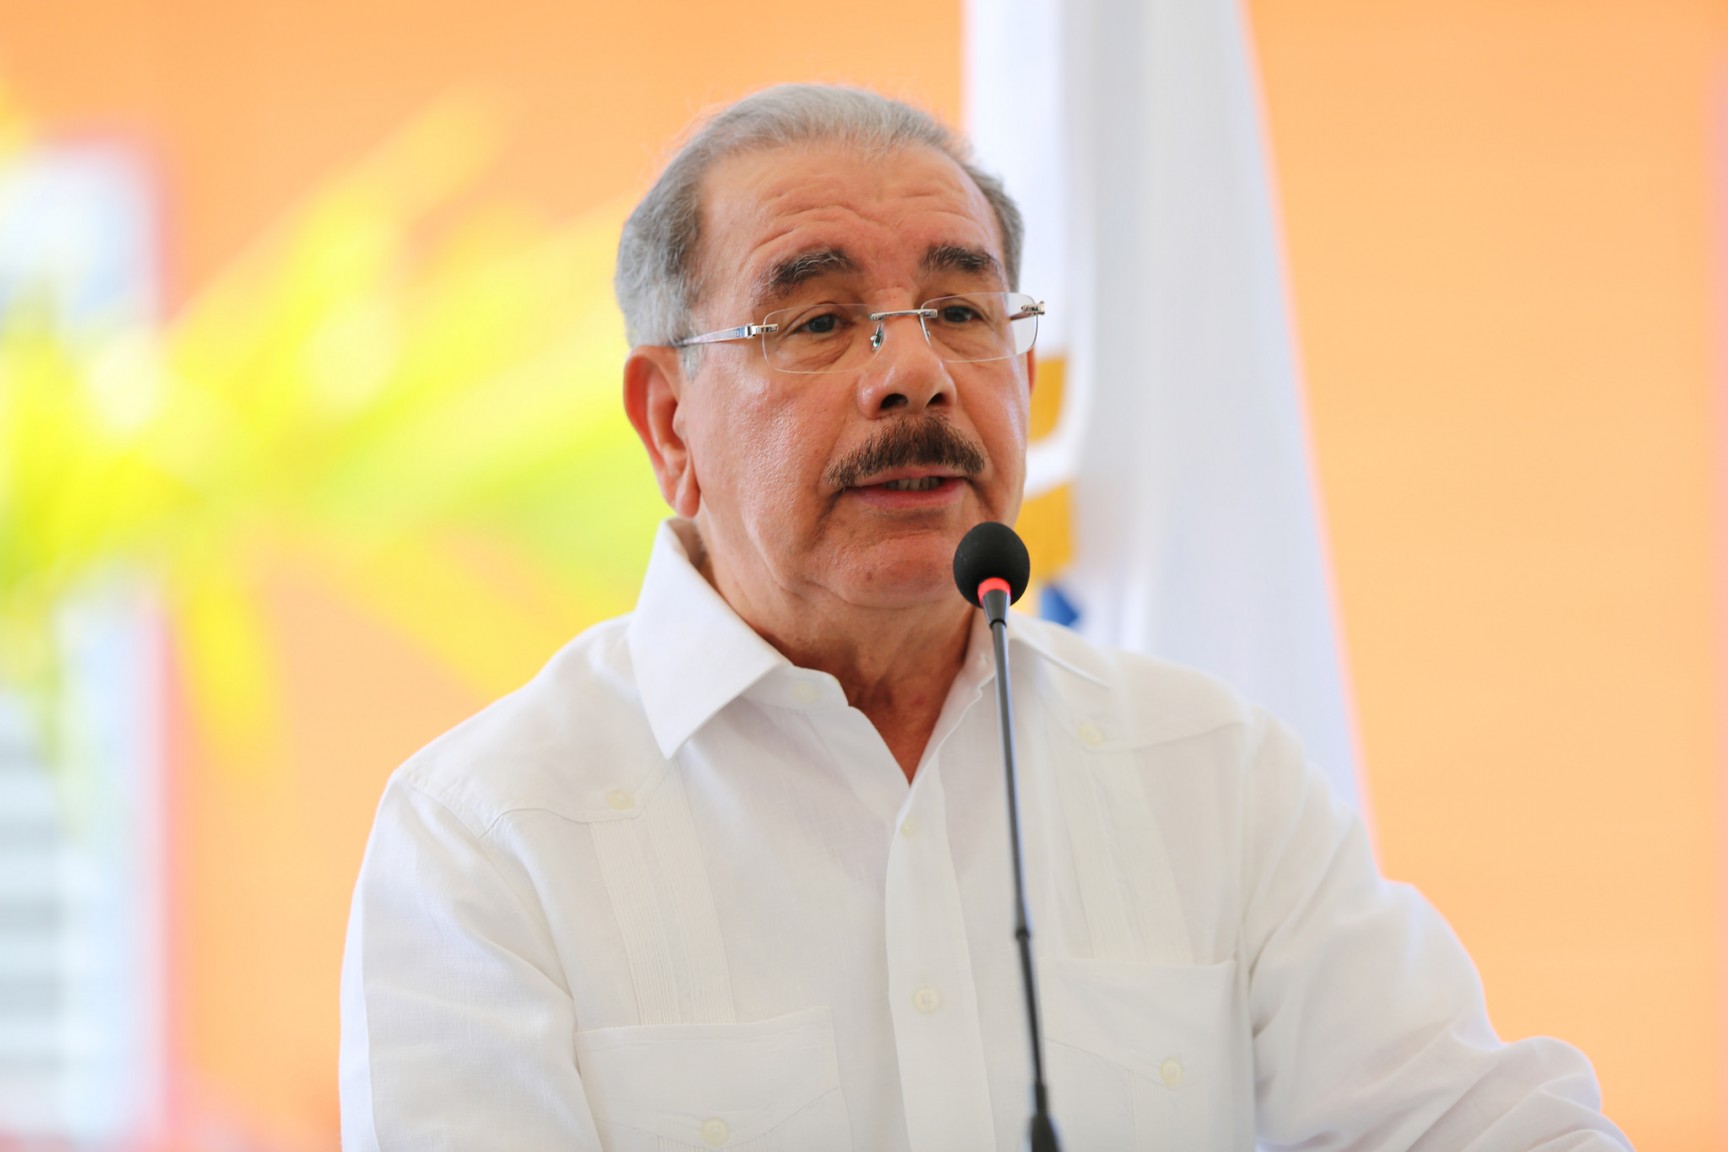 REPÚBLICA DOMINICANA: Danilo Medina en Bohechío: La Hora del Sur es la agropecuaria. Proyectos Desarrollo Agroforestal transformarán vida de la gente